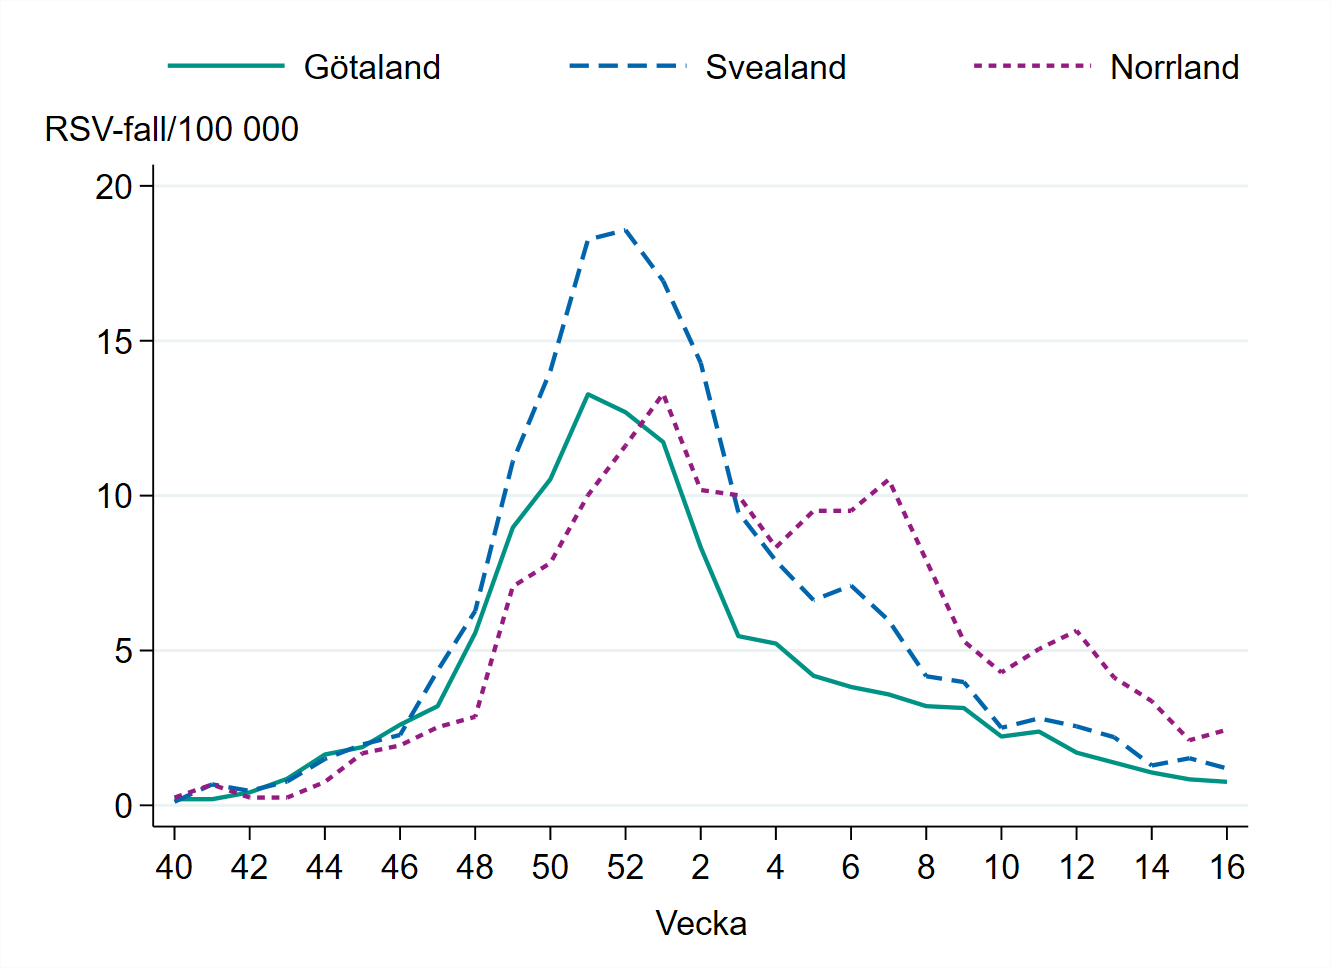 Högst incidens i Norrland med 2 fall per 100 000 invånare vecka 16.